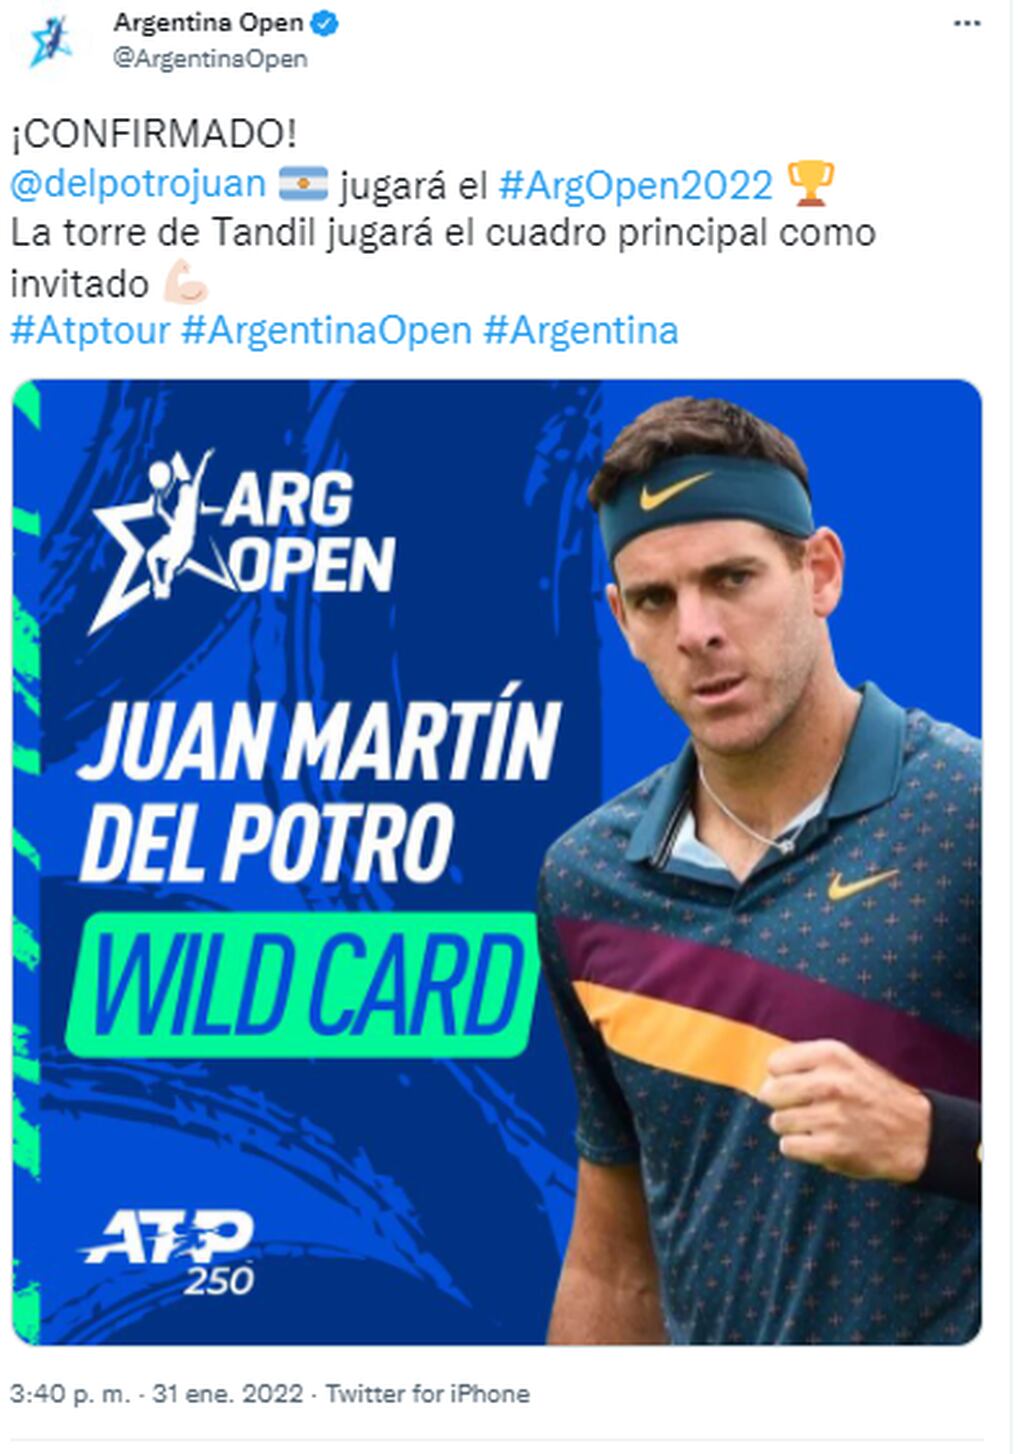 Posteo de Argentina Open / Gentileza